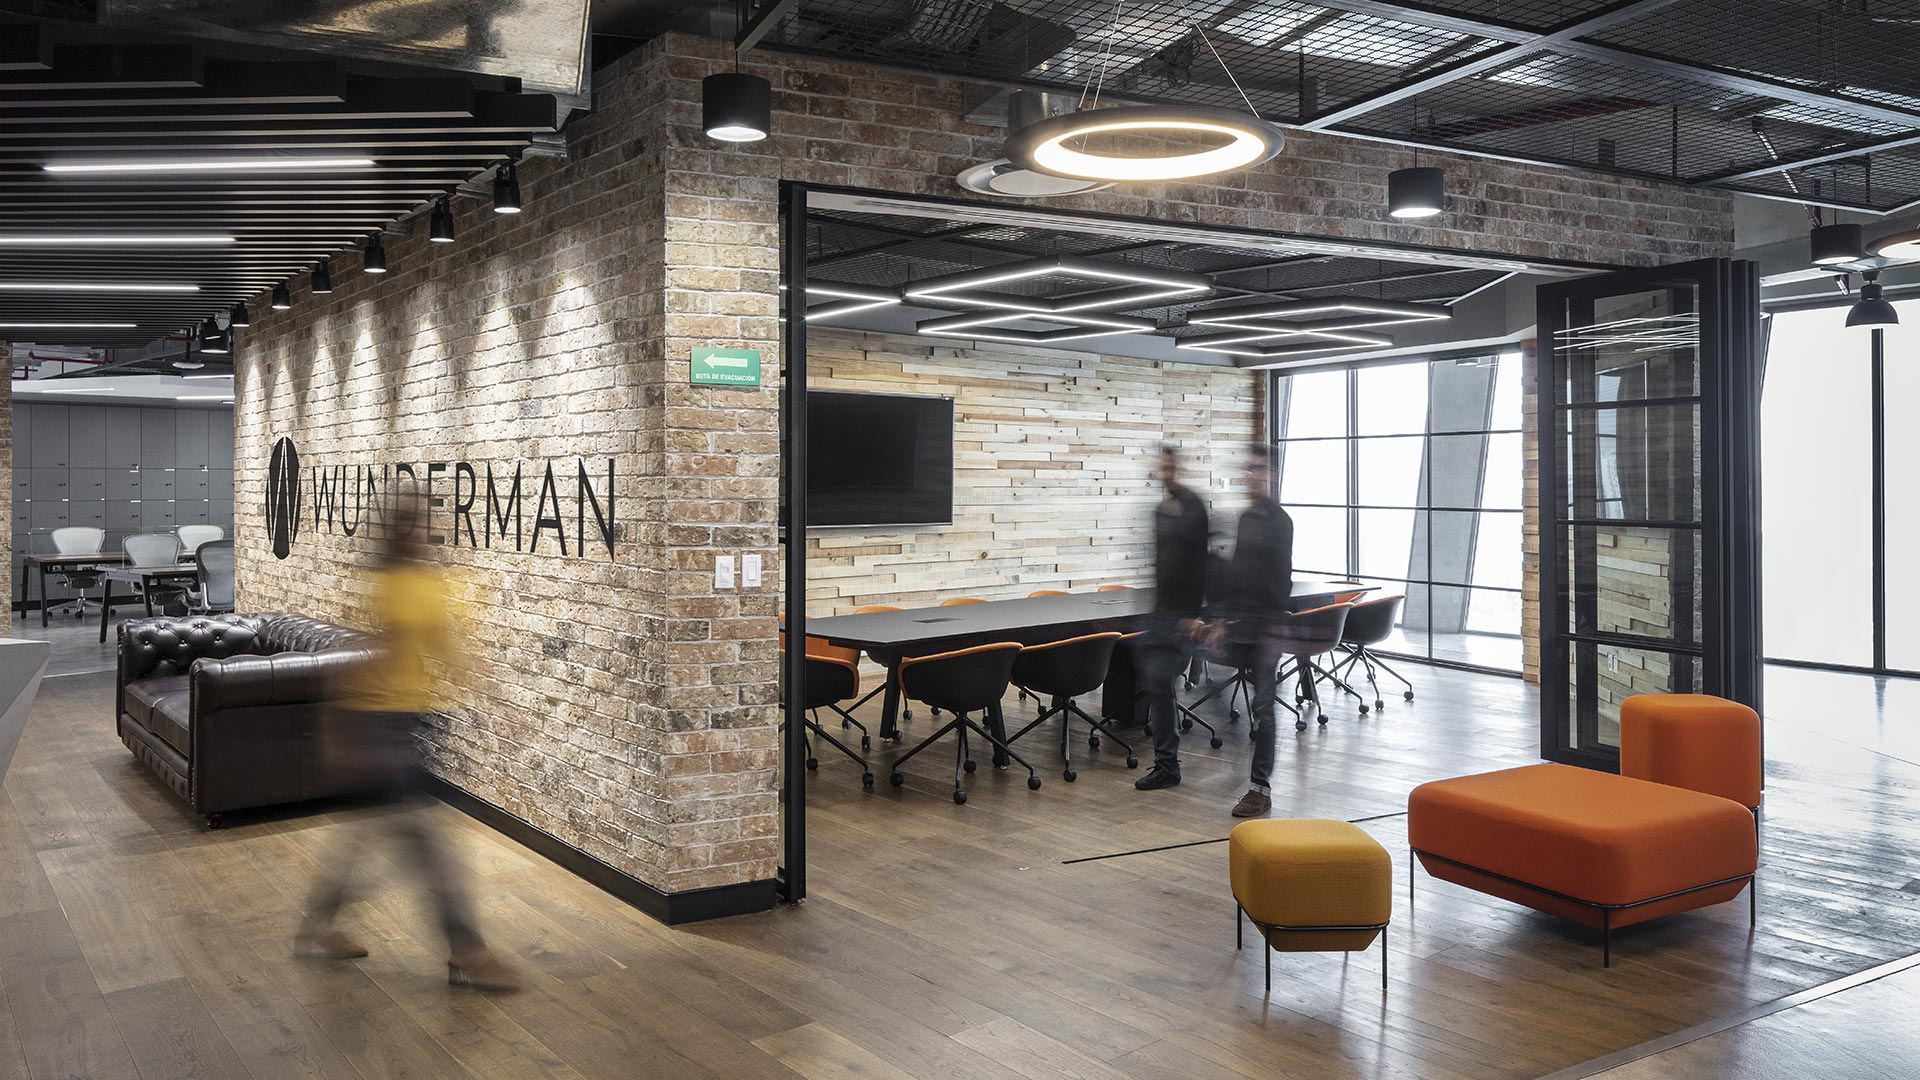 Wunderman办公室——墨西哥城|ART-Arrakis | 建筑室内设计的创新与灵感